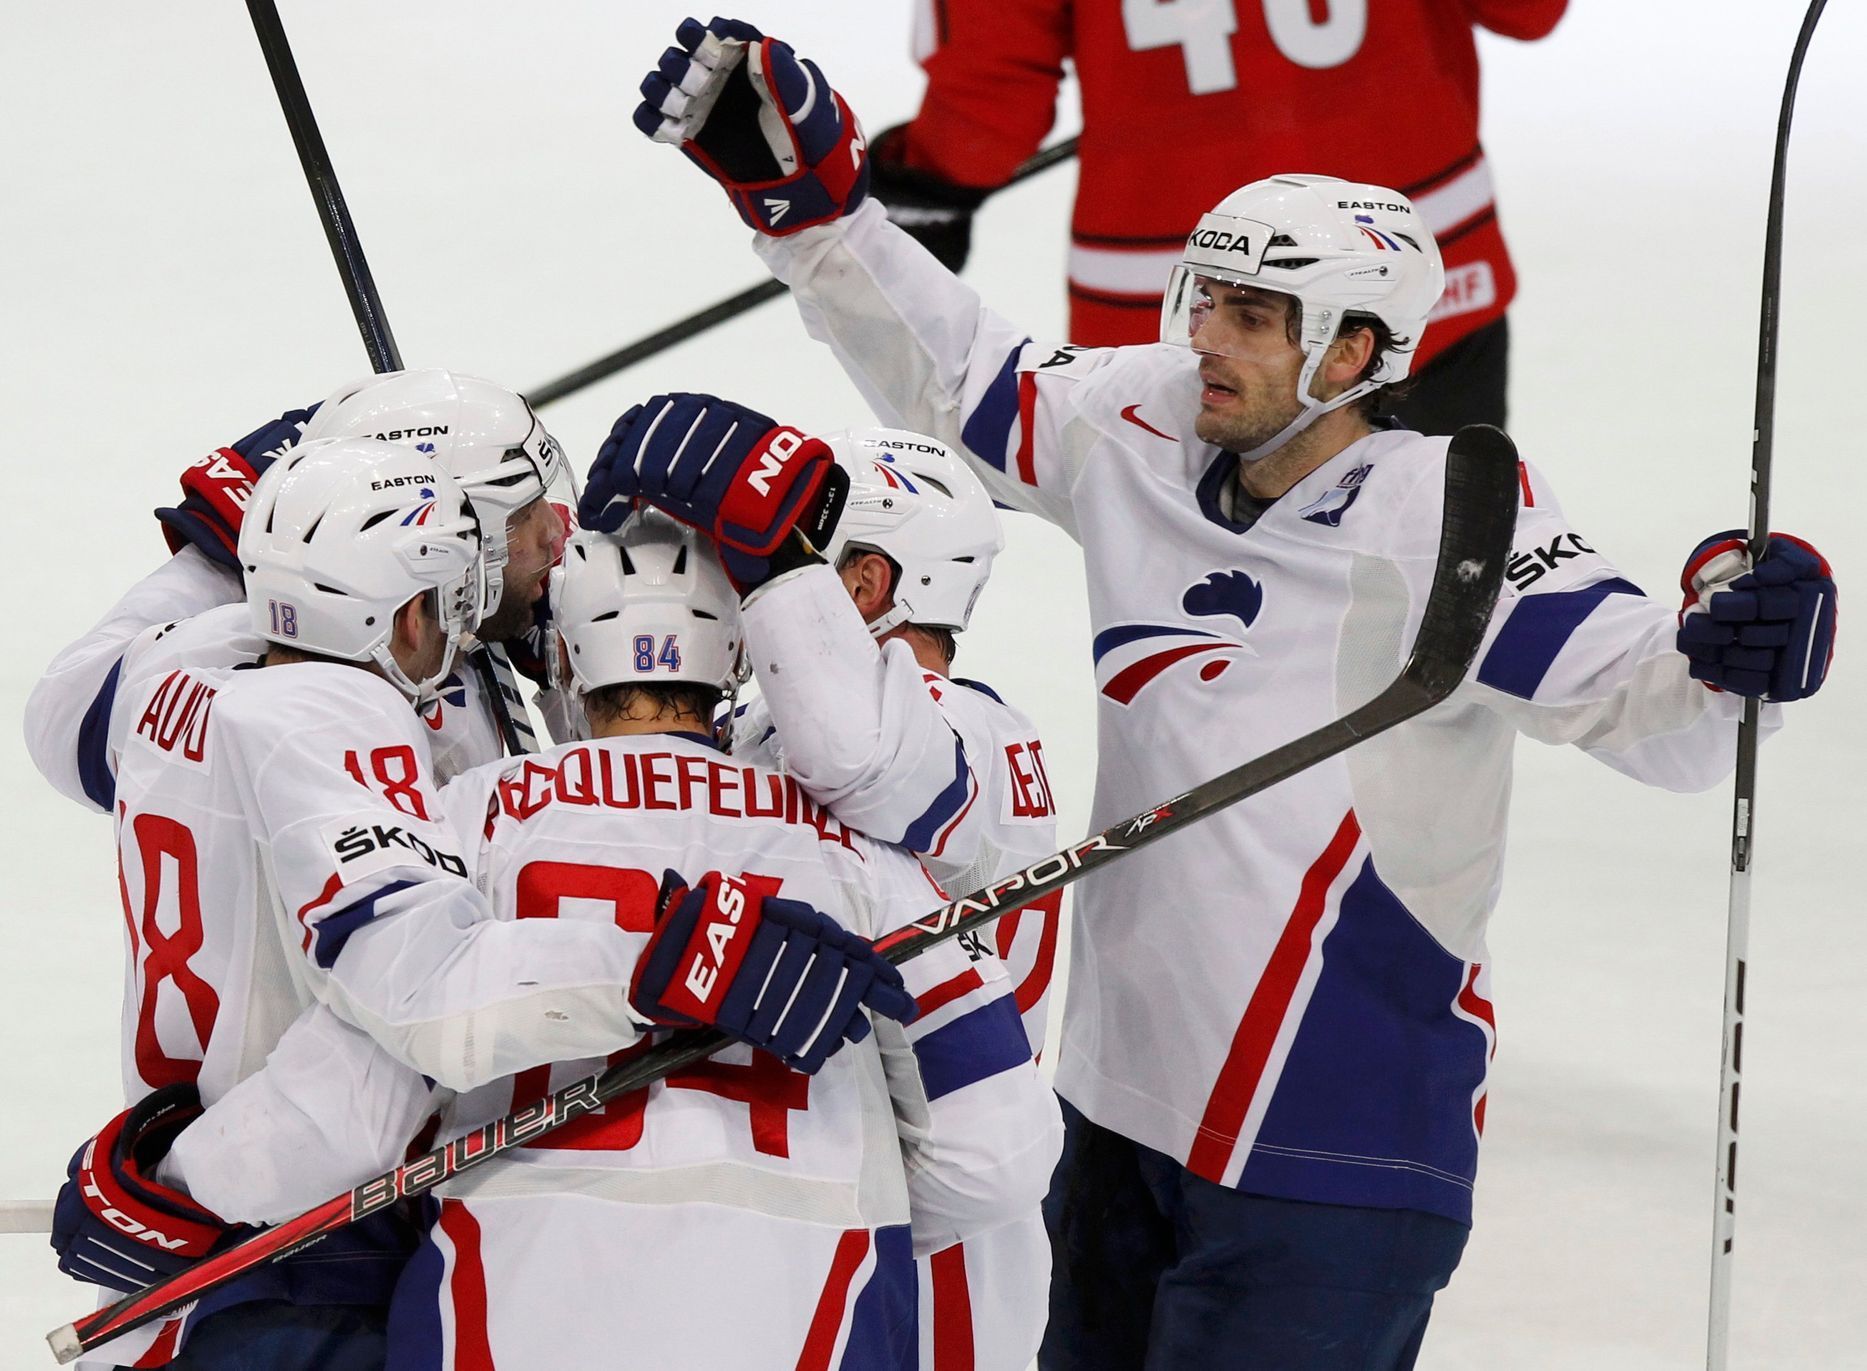 Radost francouzských hokejistů v utkání proti Švýcarsku